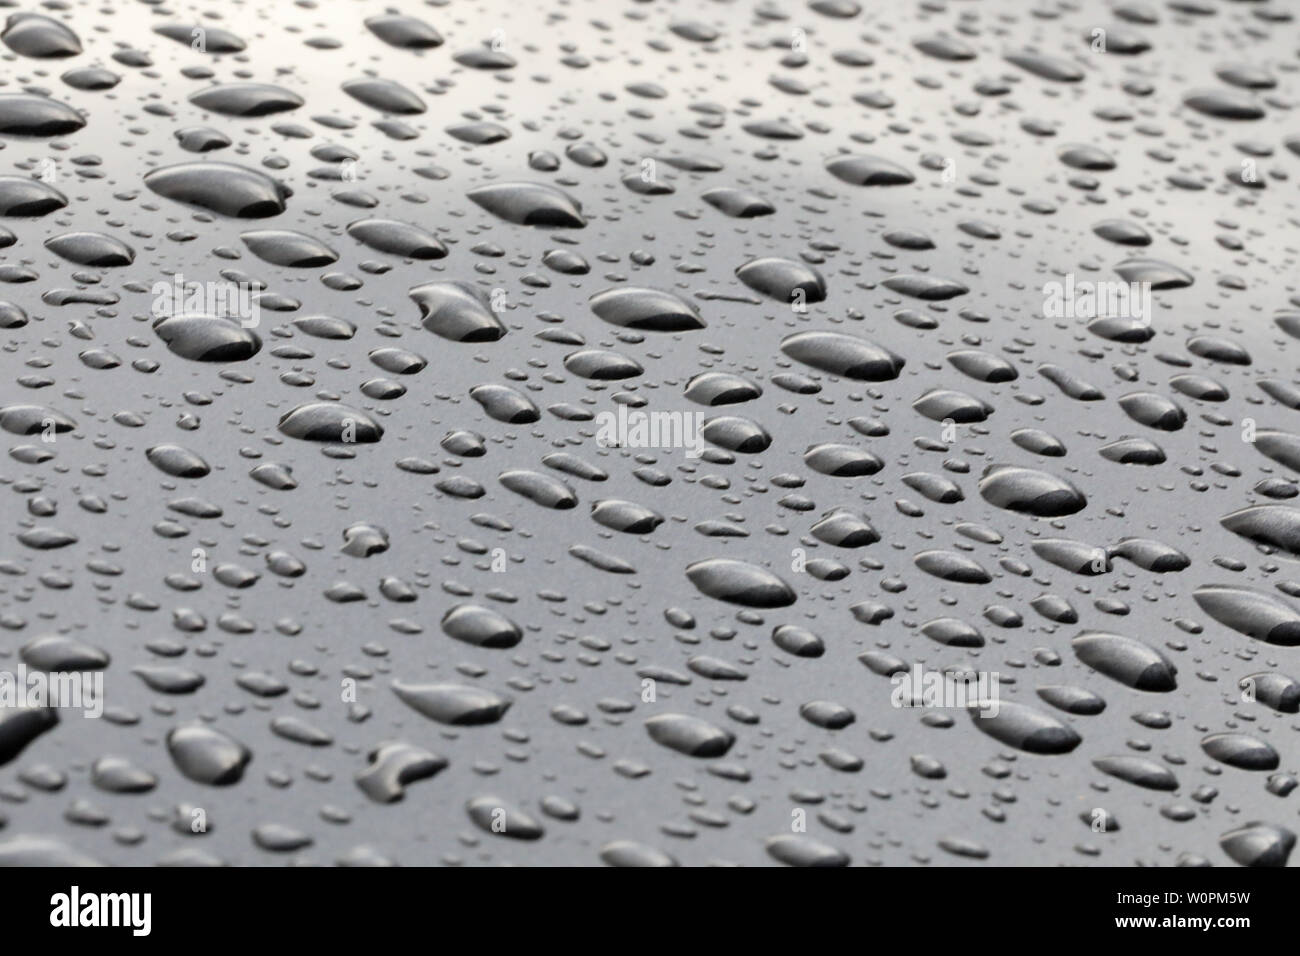 Schéma des gouttelettes d'eau de pluie sur une surface en métal gris poli. Perles de pluie assis sur un fond gris Banque D'Images